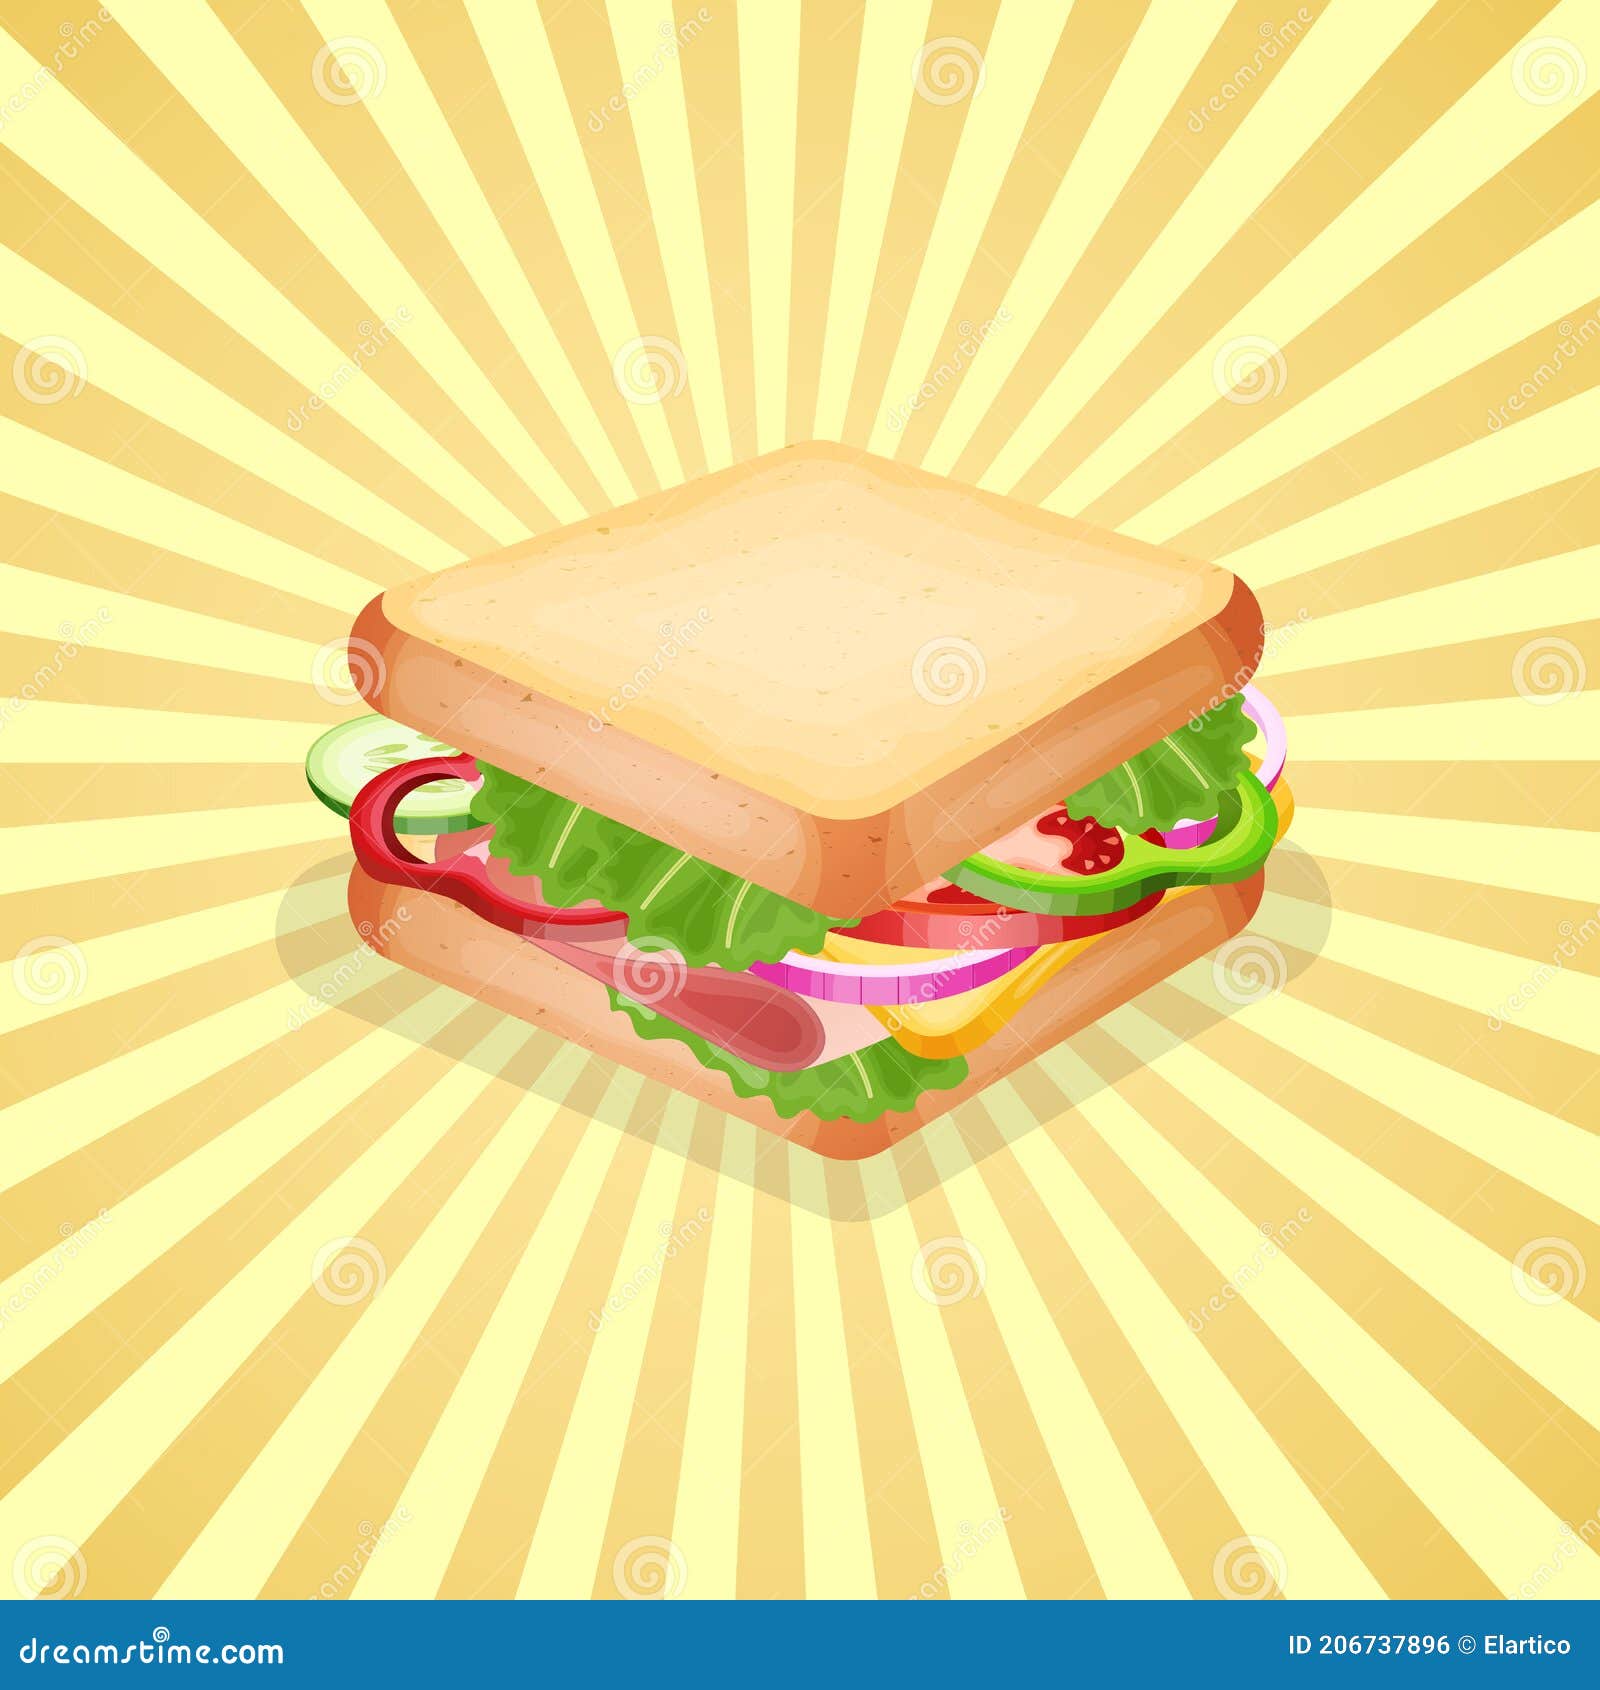 Sandwich hài hước không chỉ là một món ăn ngon mà còn là một niềm vui để xem và tìm hiểu. Hãy tham gia cùng chúng tôi trên trang web để khám phá những hình ảnh cartoon sandwich này. Chắc chắn bạn sẽ bị cuốn hút bởi vẻ hài hước và độ sáng tạo của những hình ảnh này. 